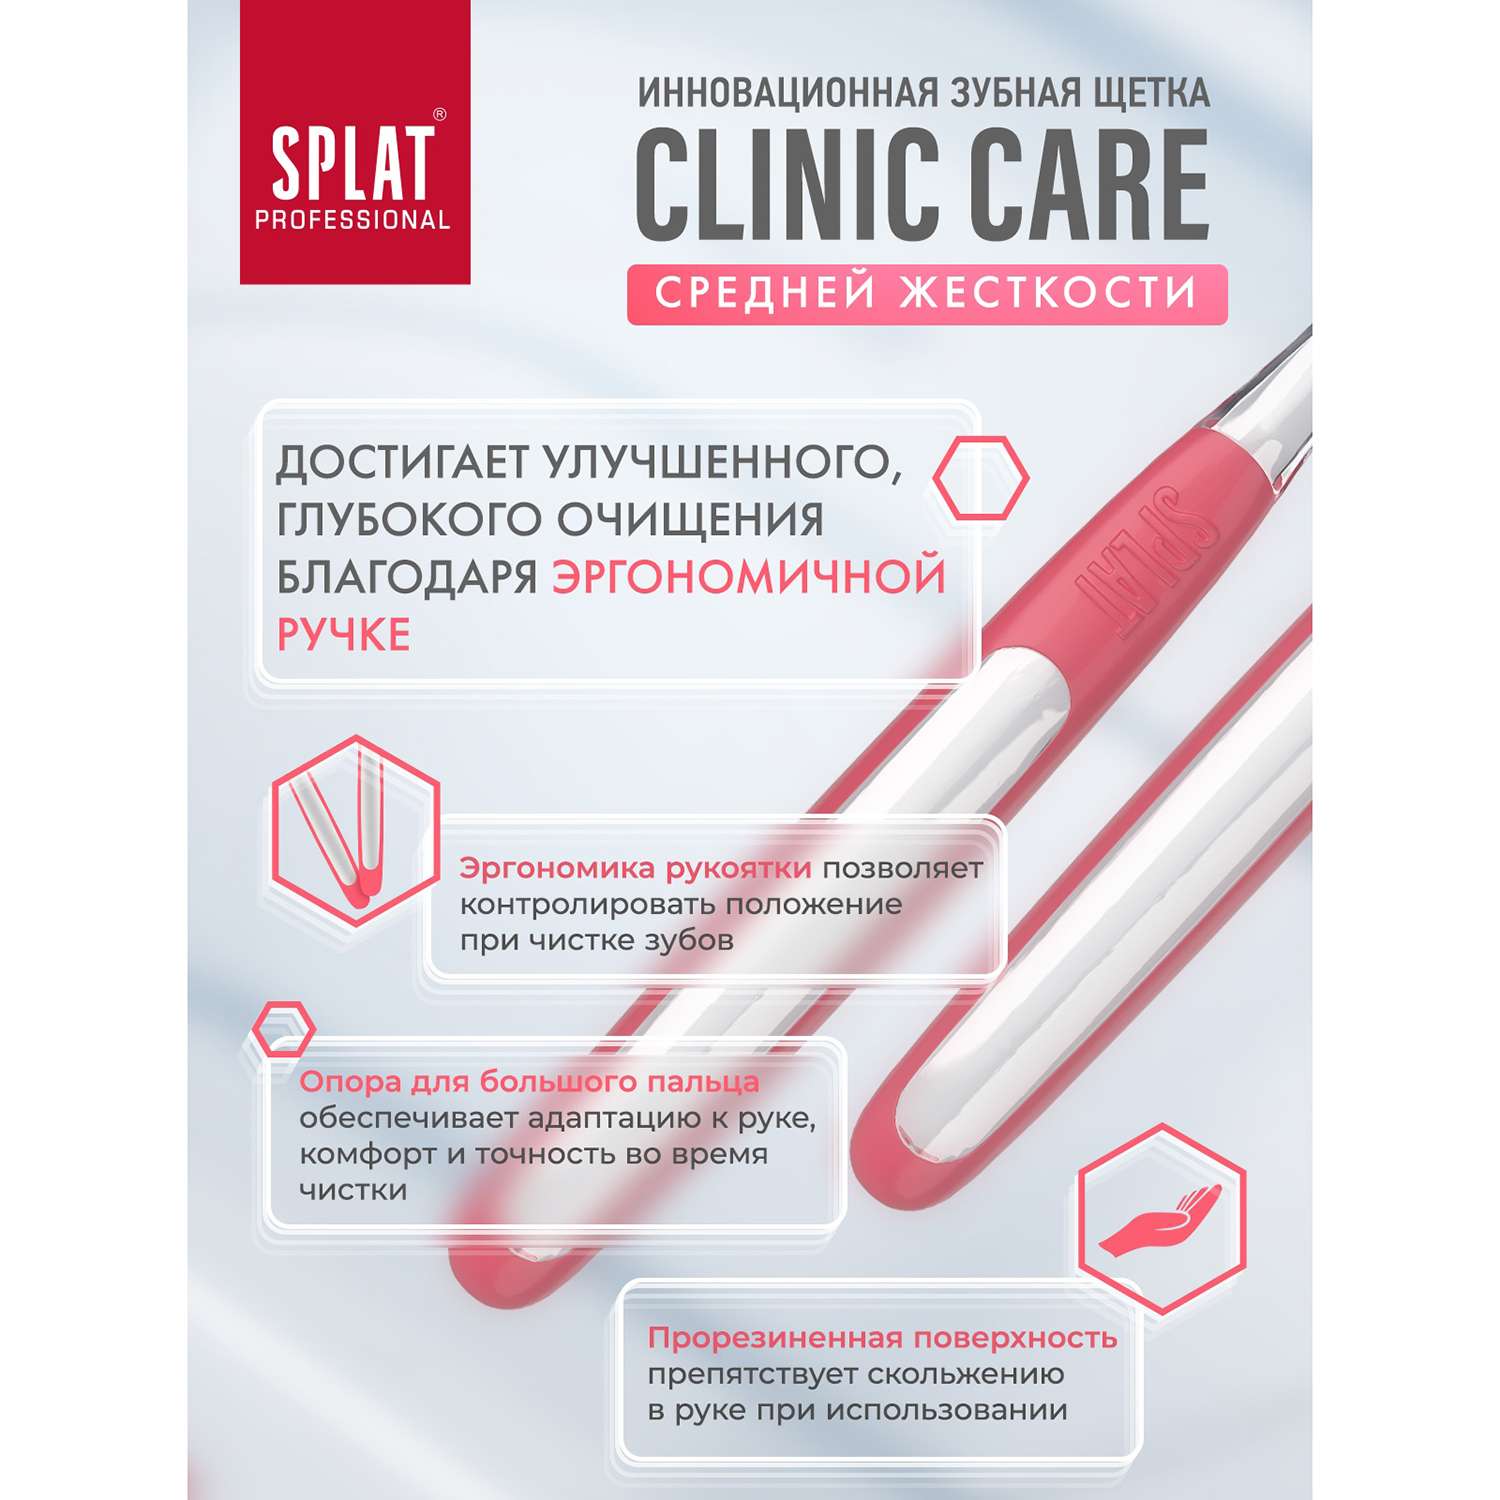 Зубная щетка Splat Clinic Care инновационная cредняя в ассортименте 111.14225.0101 - фото 4